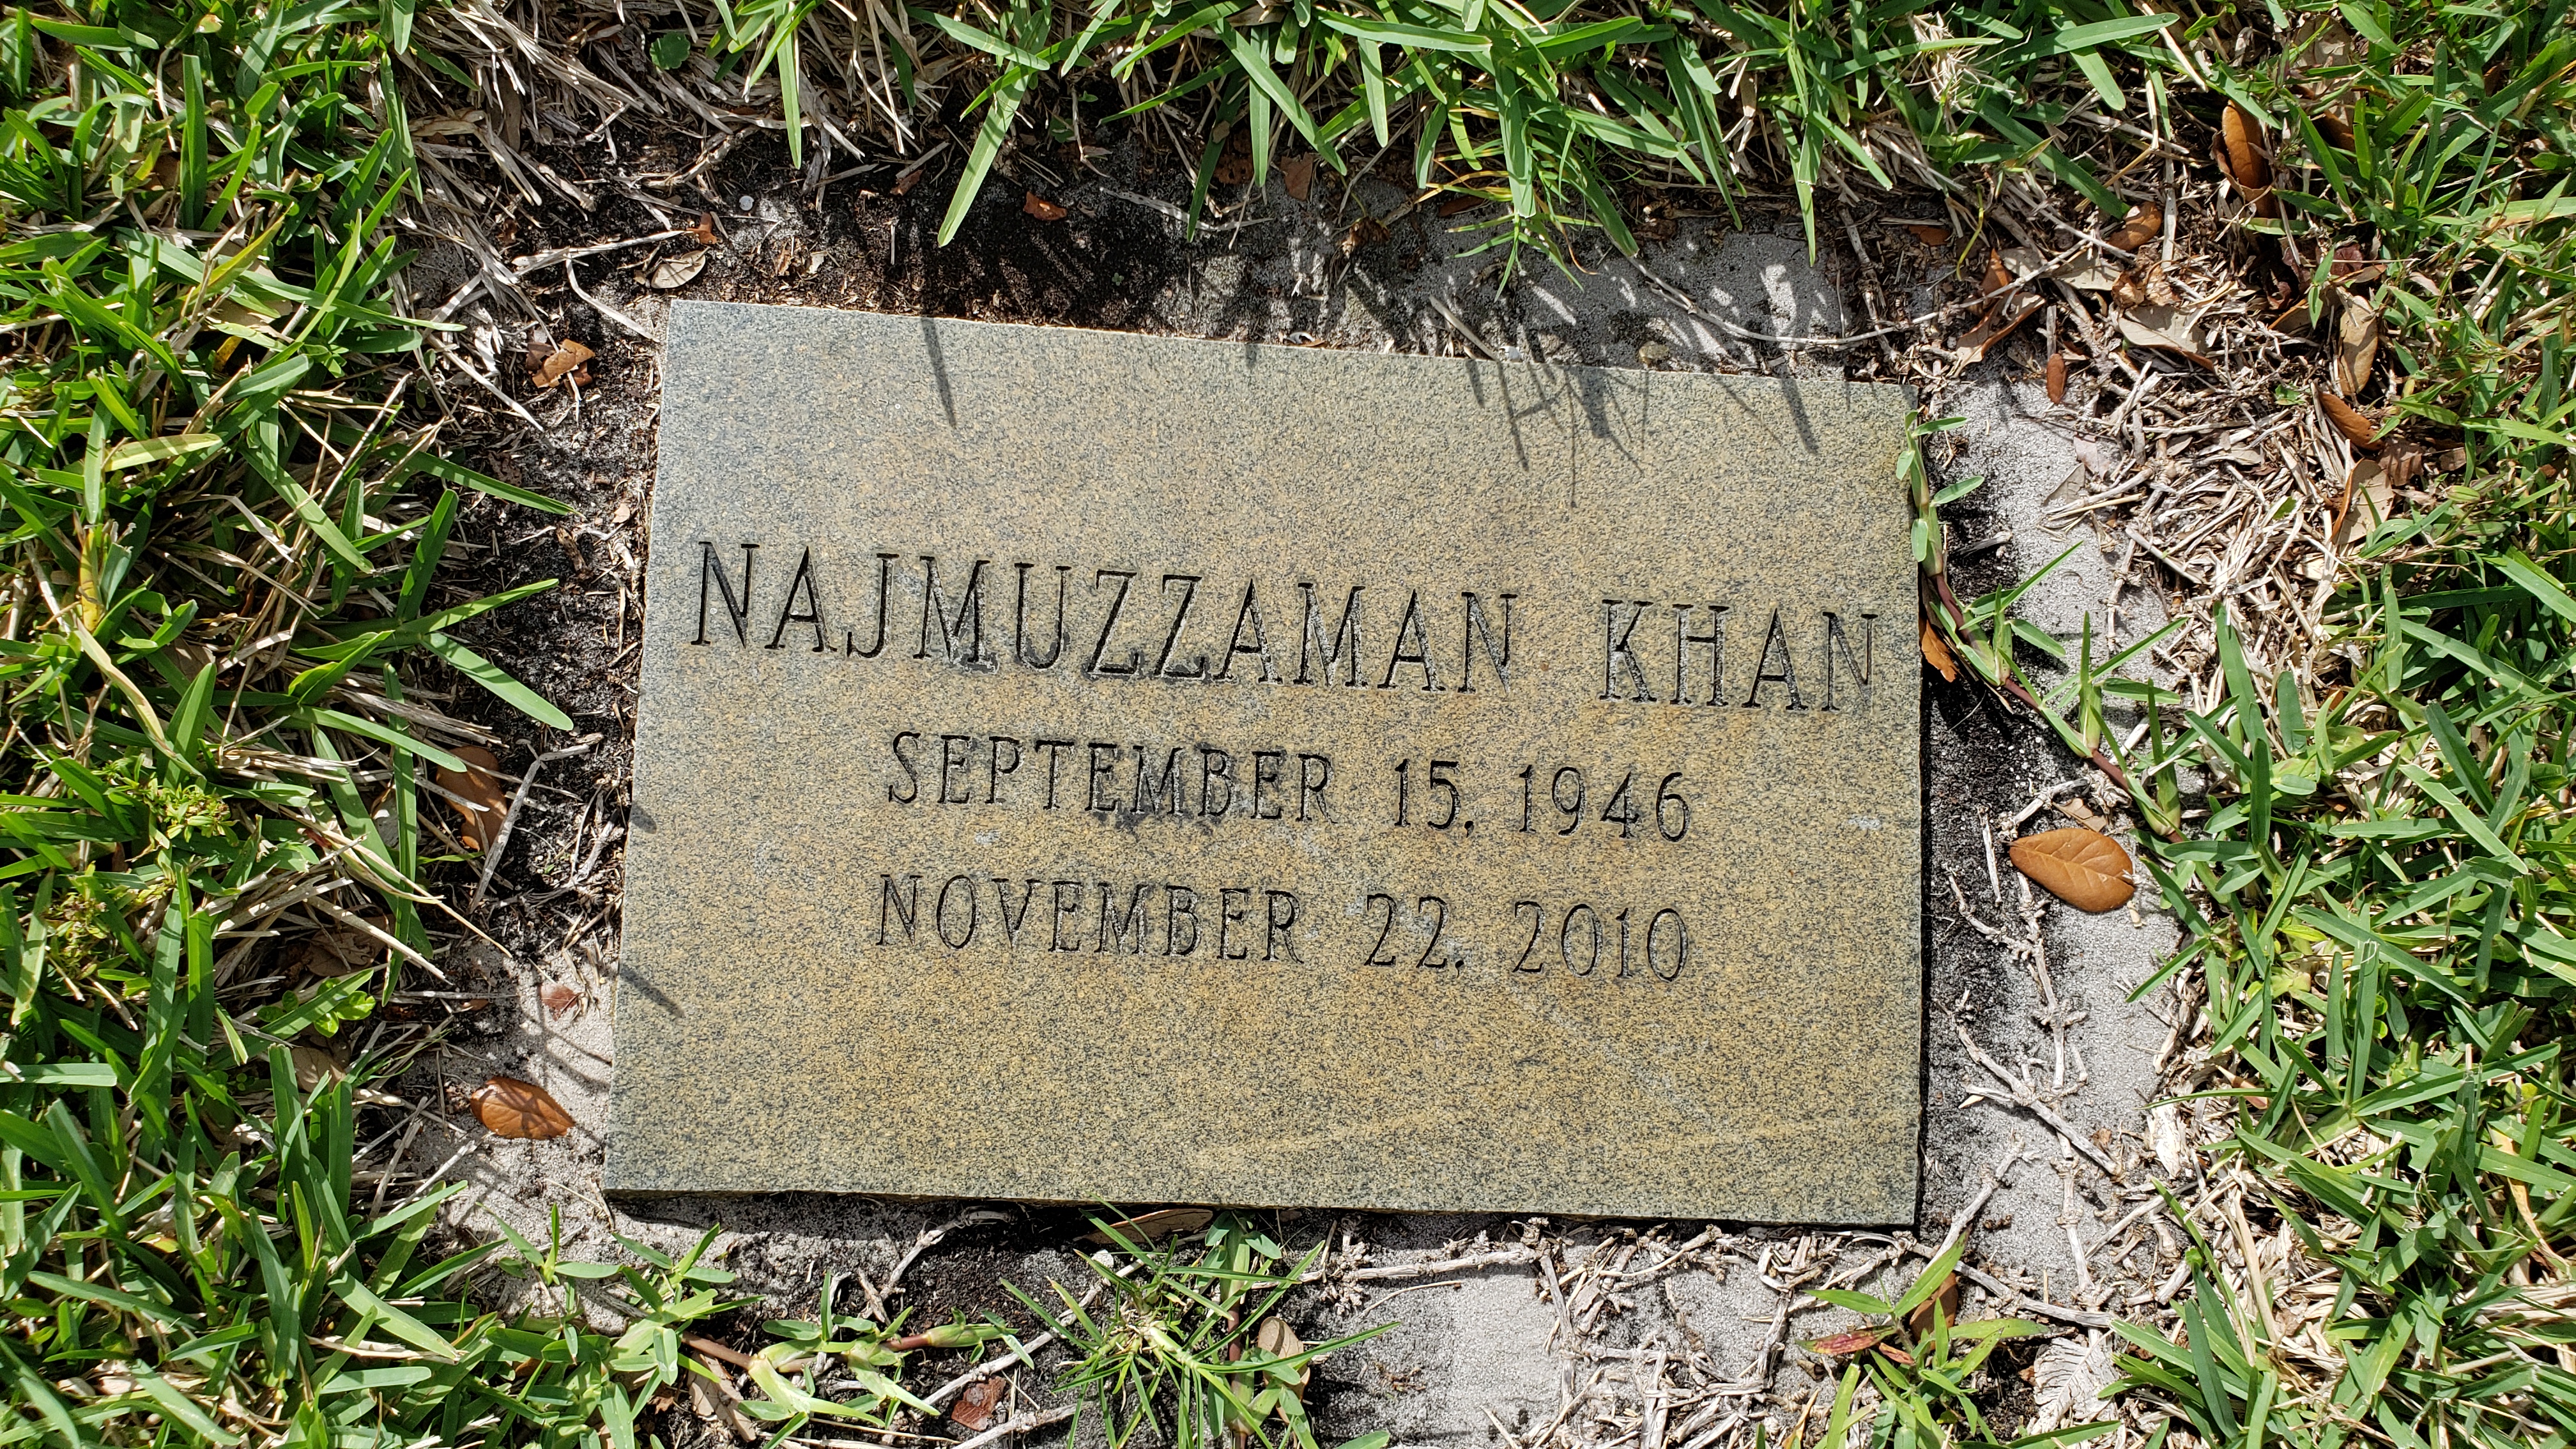 Najmuzzaman Khan